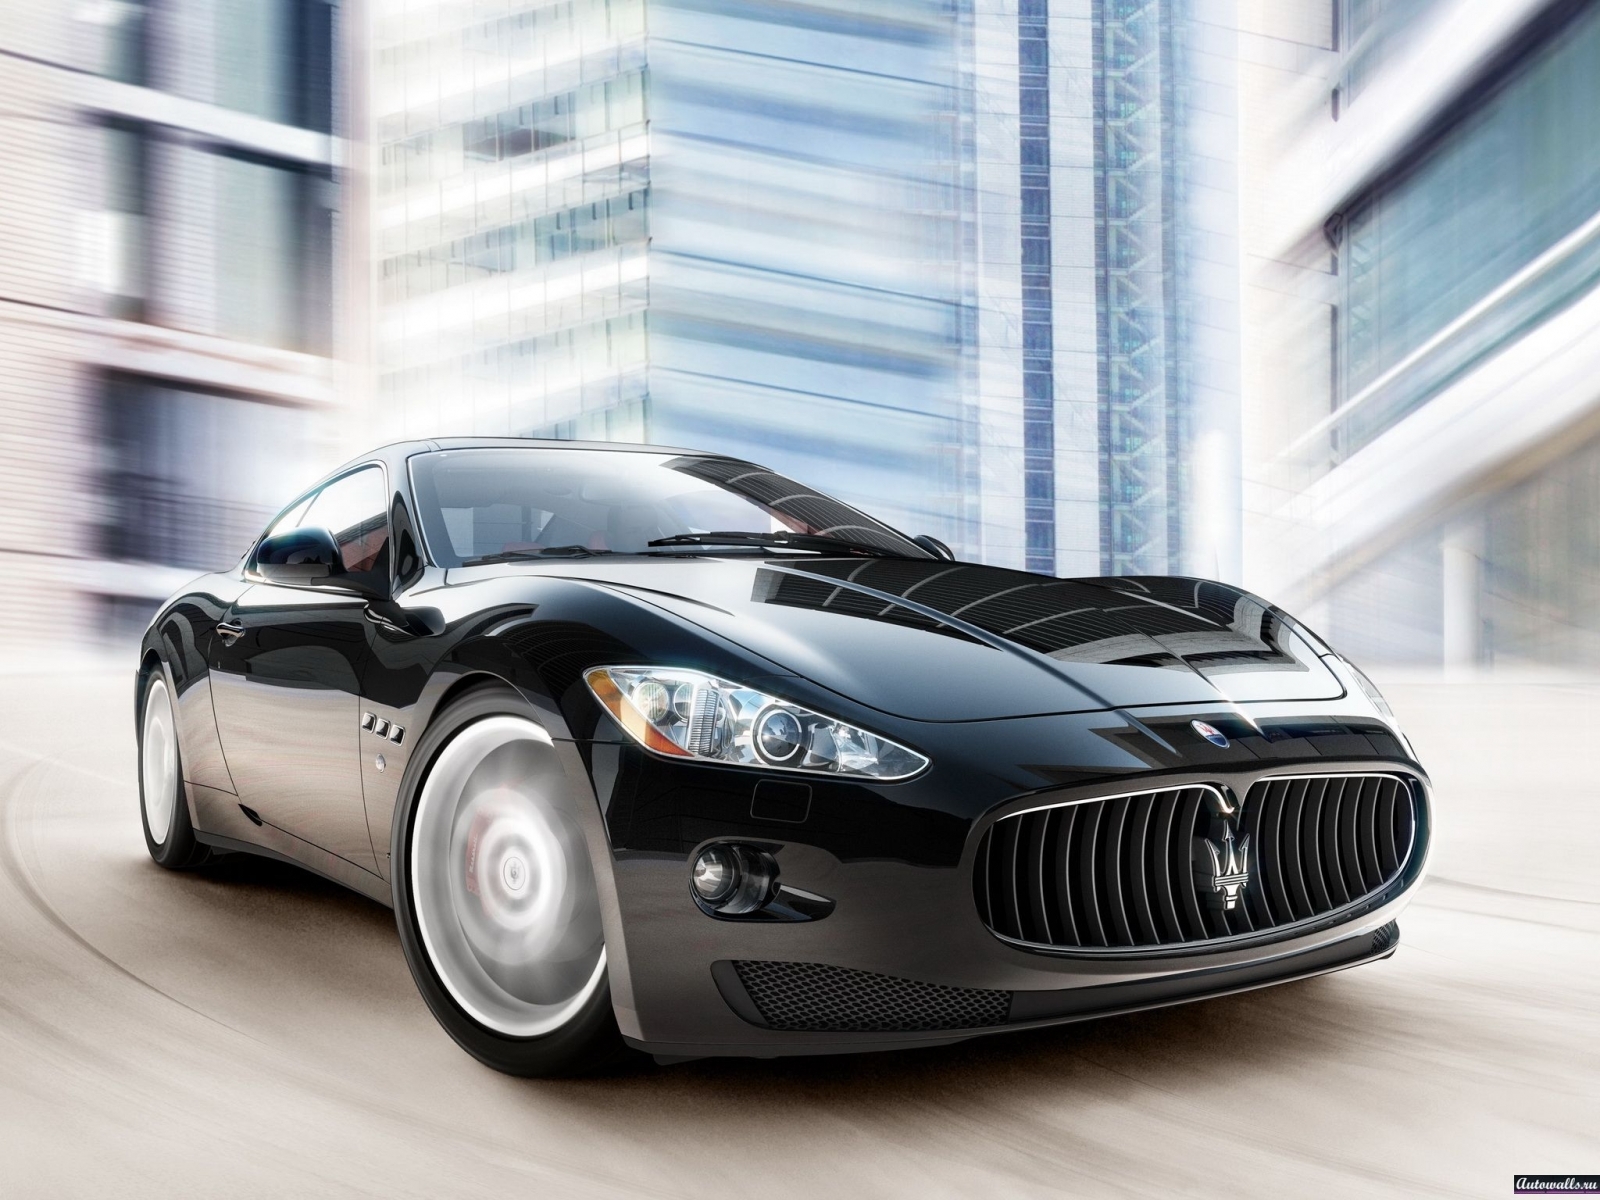 Скачать картинку Транспорт, Мазератти (Maserati), Машины в телефон бесплатно.